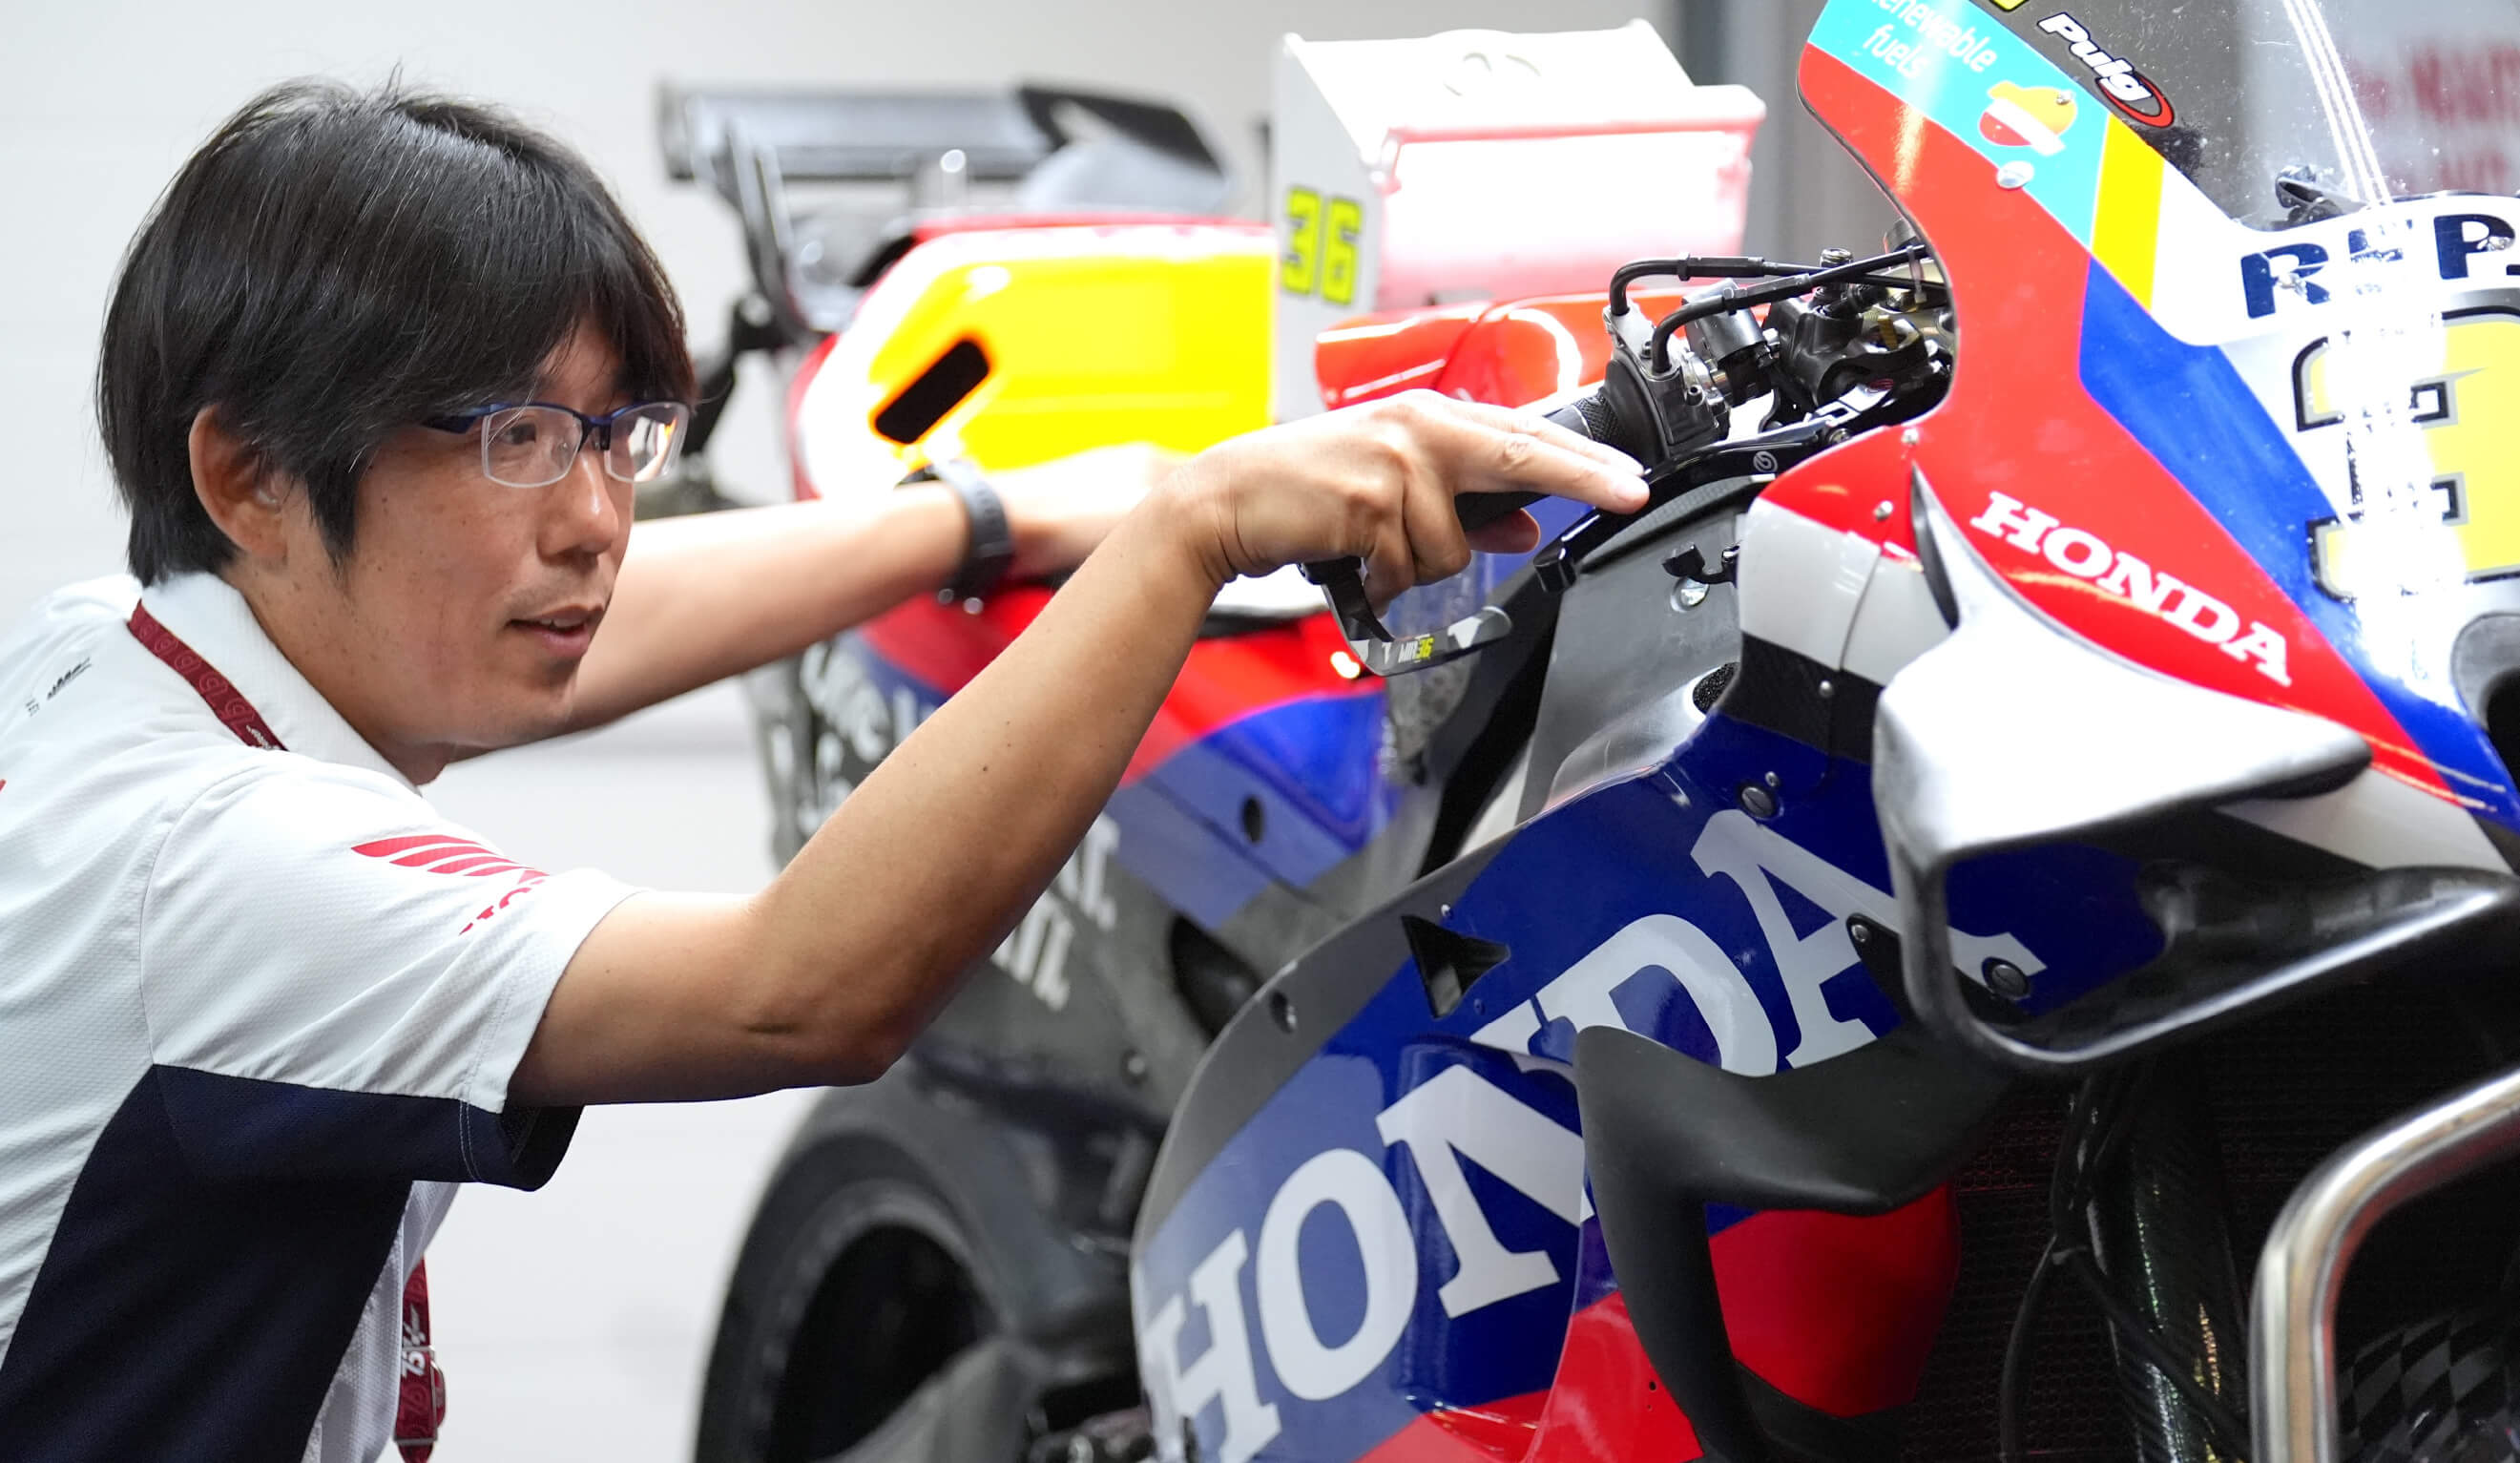 ロードレーサーの開発がしたい──夢を力に走り続け、Hondaでかなえた夢の頂点